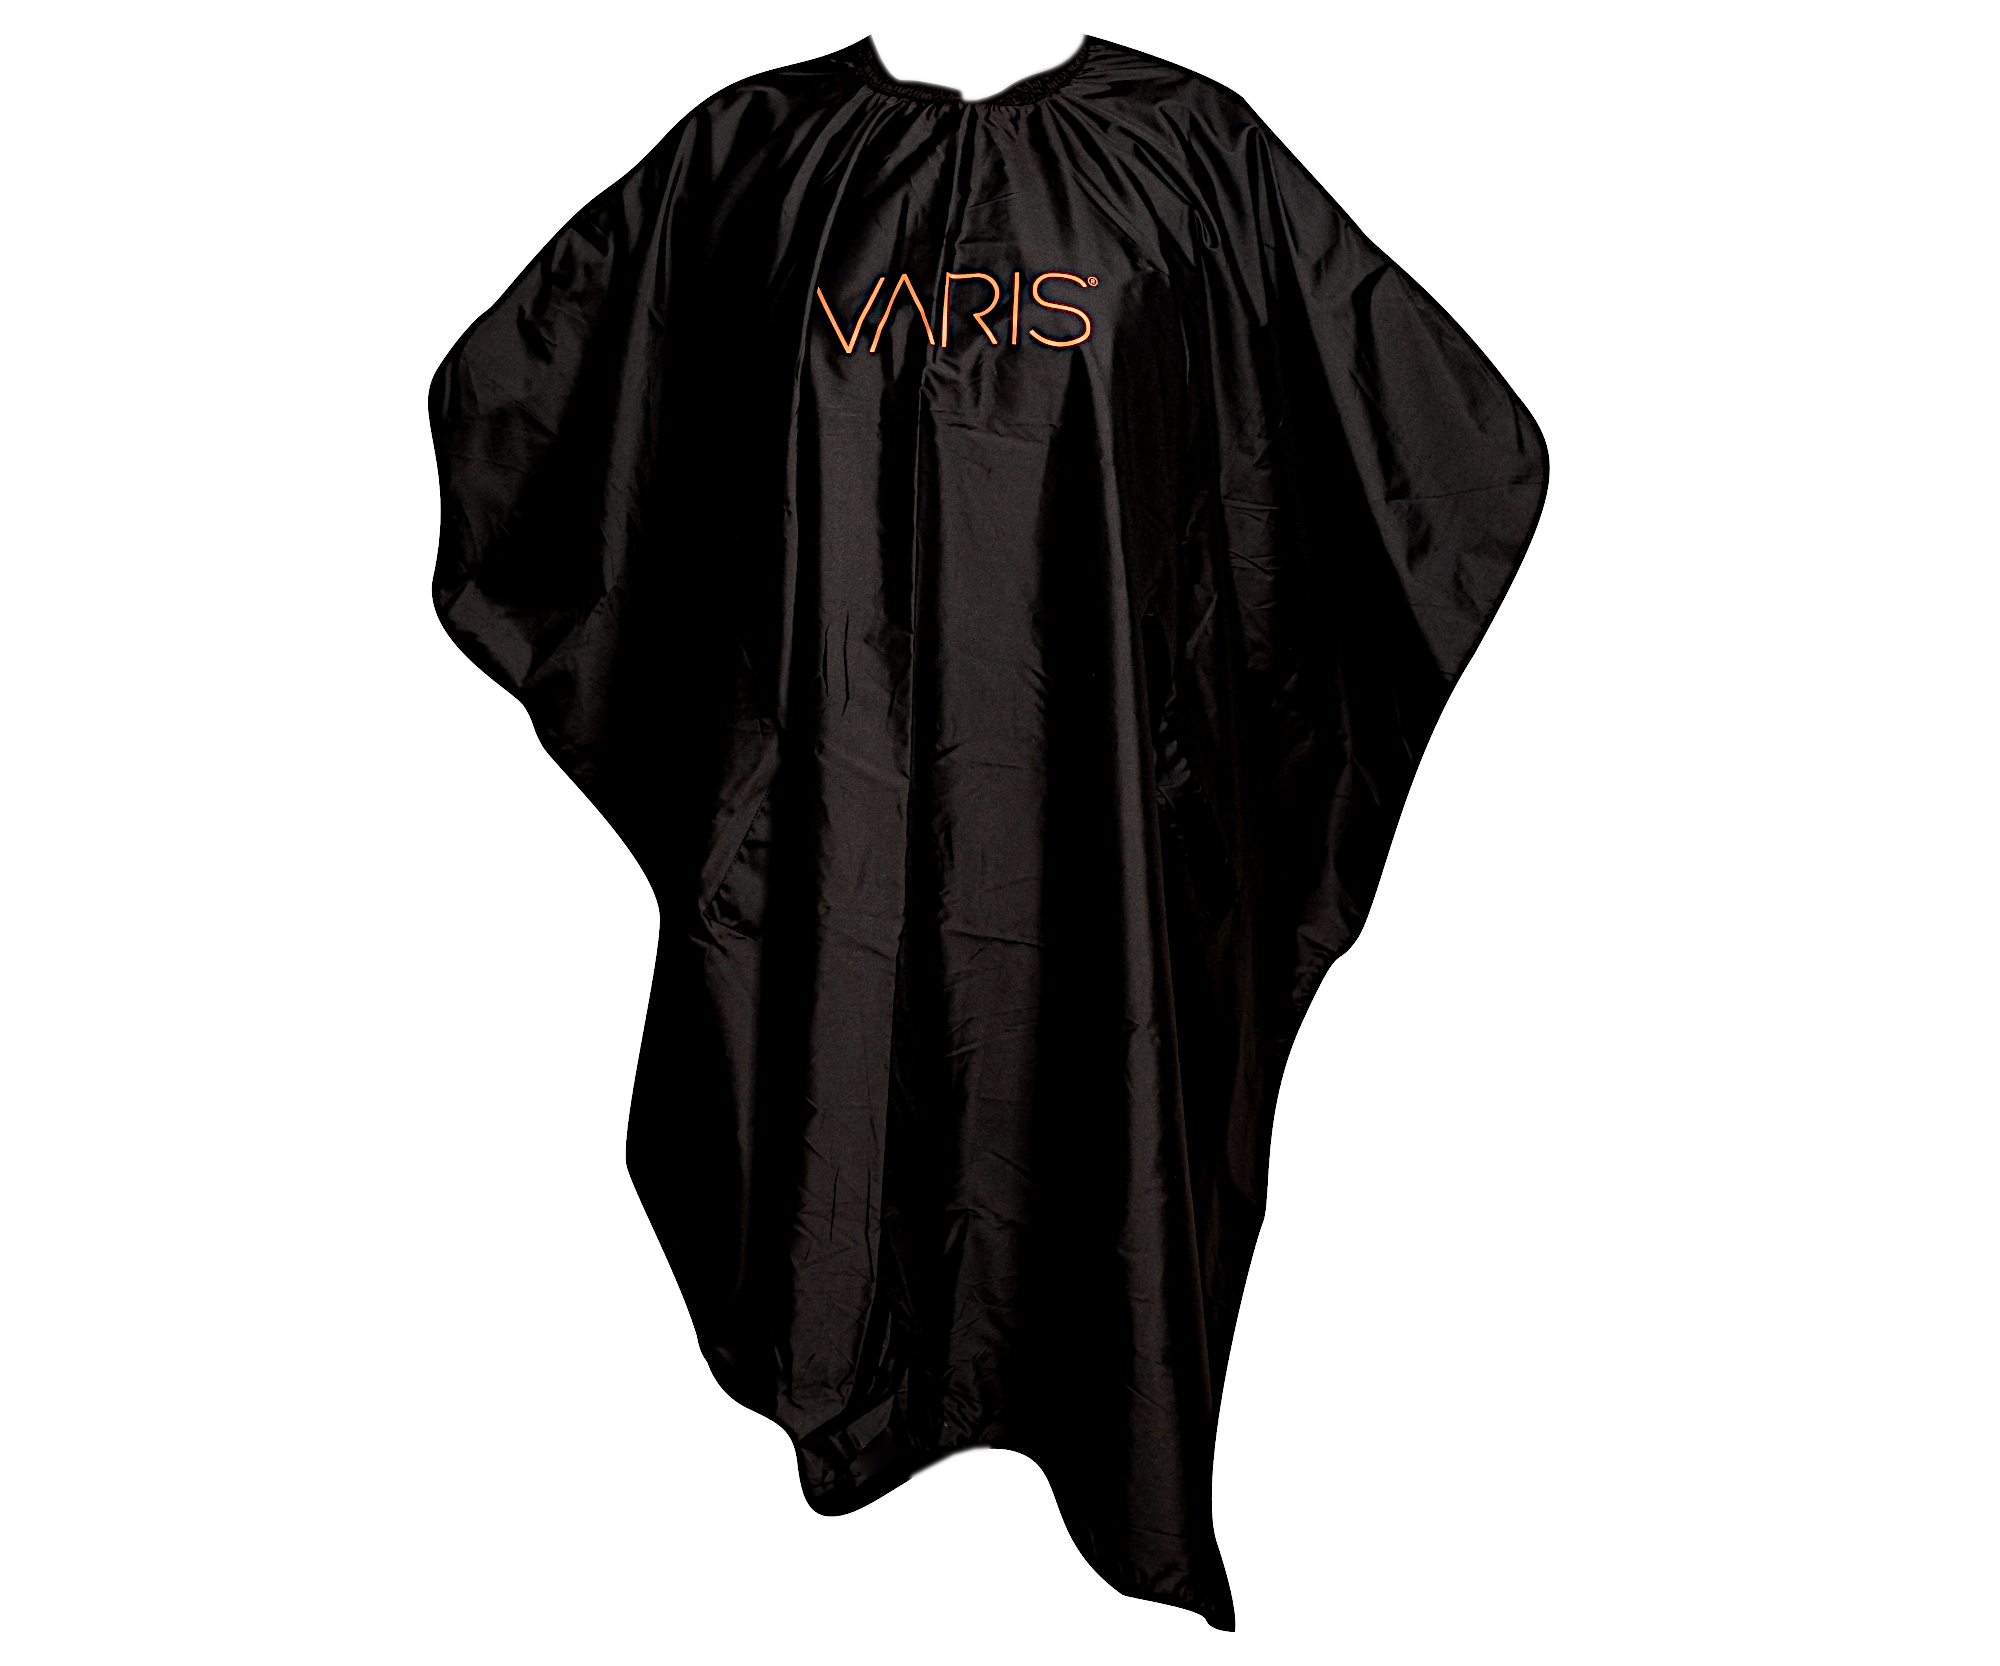 Profesionální pláštěnka na stříhání vlasů Varis - černá + dárek zdarma